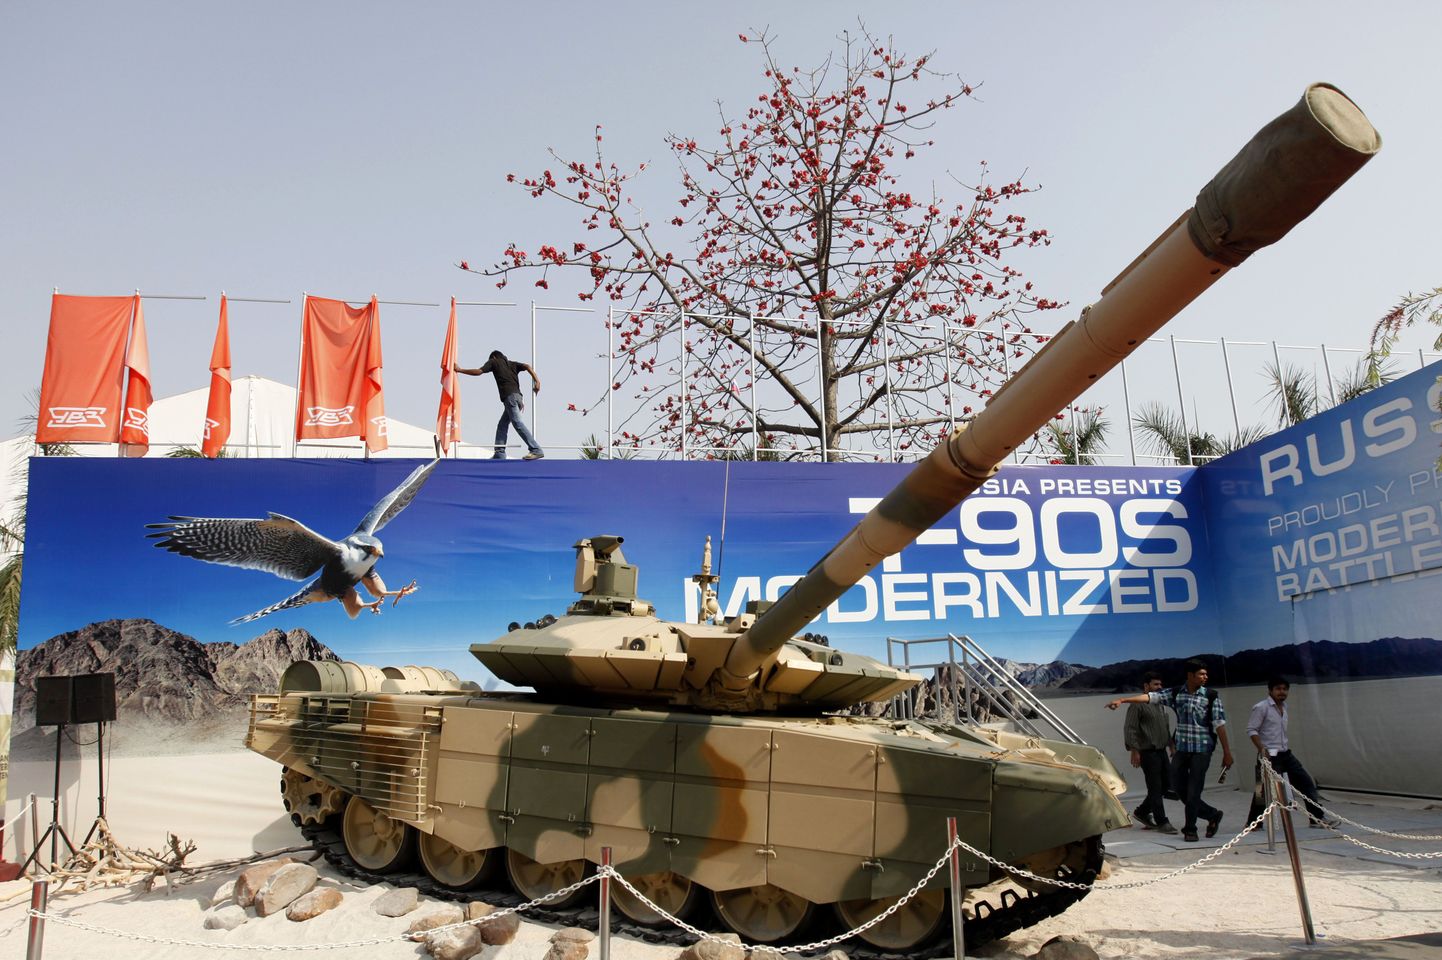 Vene T-90S aprillis Indias New Delhis toimunud relvamessil.